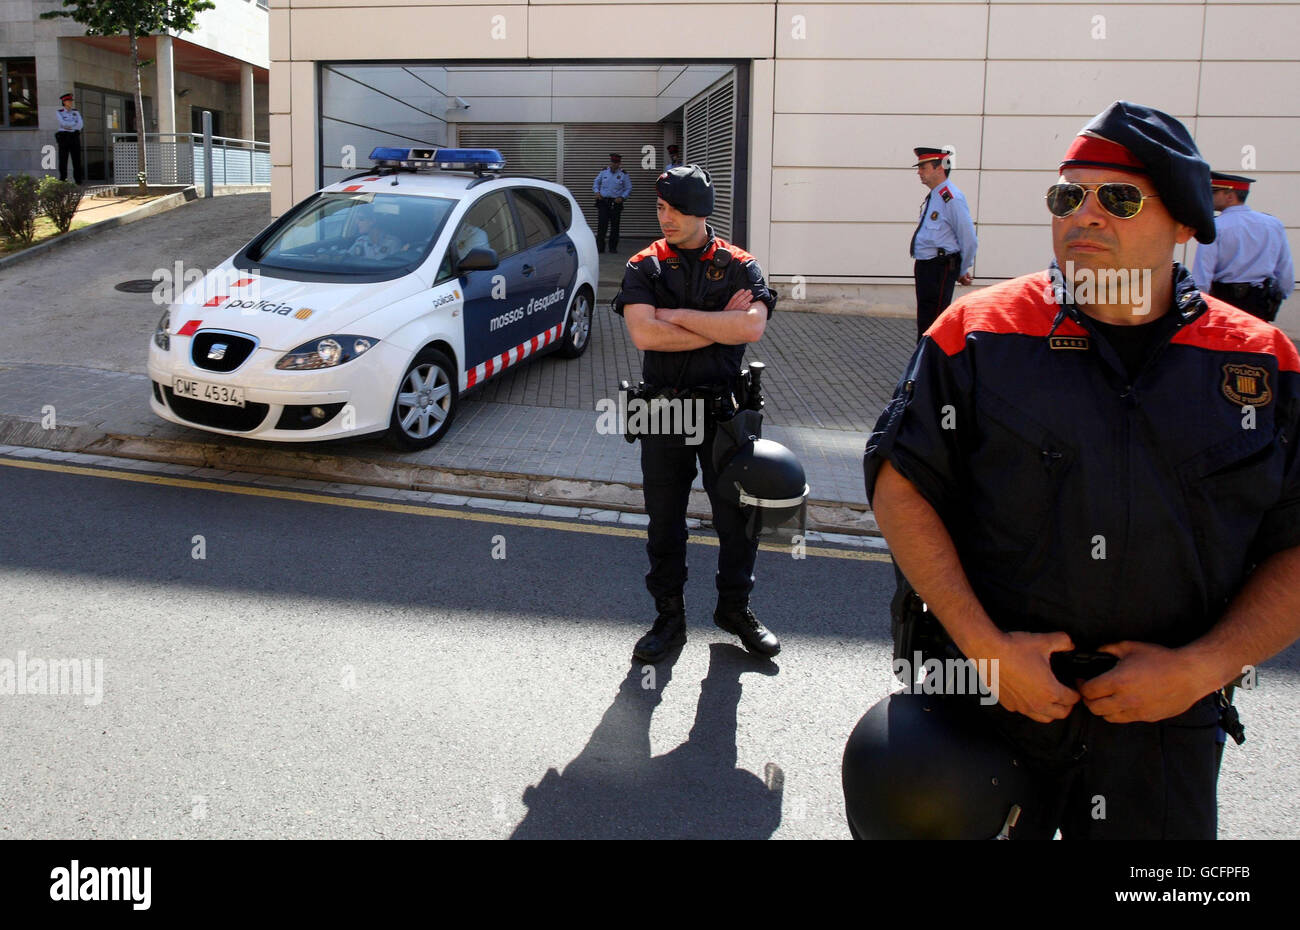 Una macchina di polizia lascia la stazione di polizia a Blanes, in Spagna, dove si tiene Lianne Smith. La donna britannica, i cui due figli sono stati trovati morti in una camera d'albergo spagnola, apparirà a corte questa mattina. Foto Stock